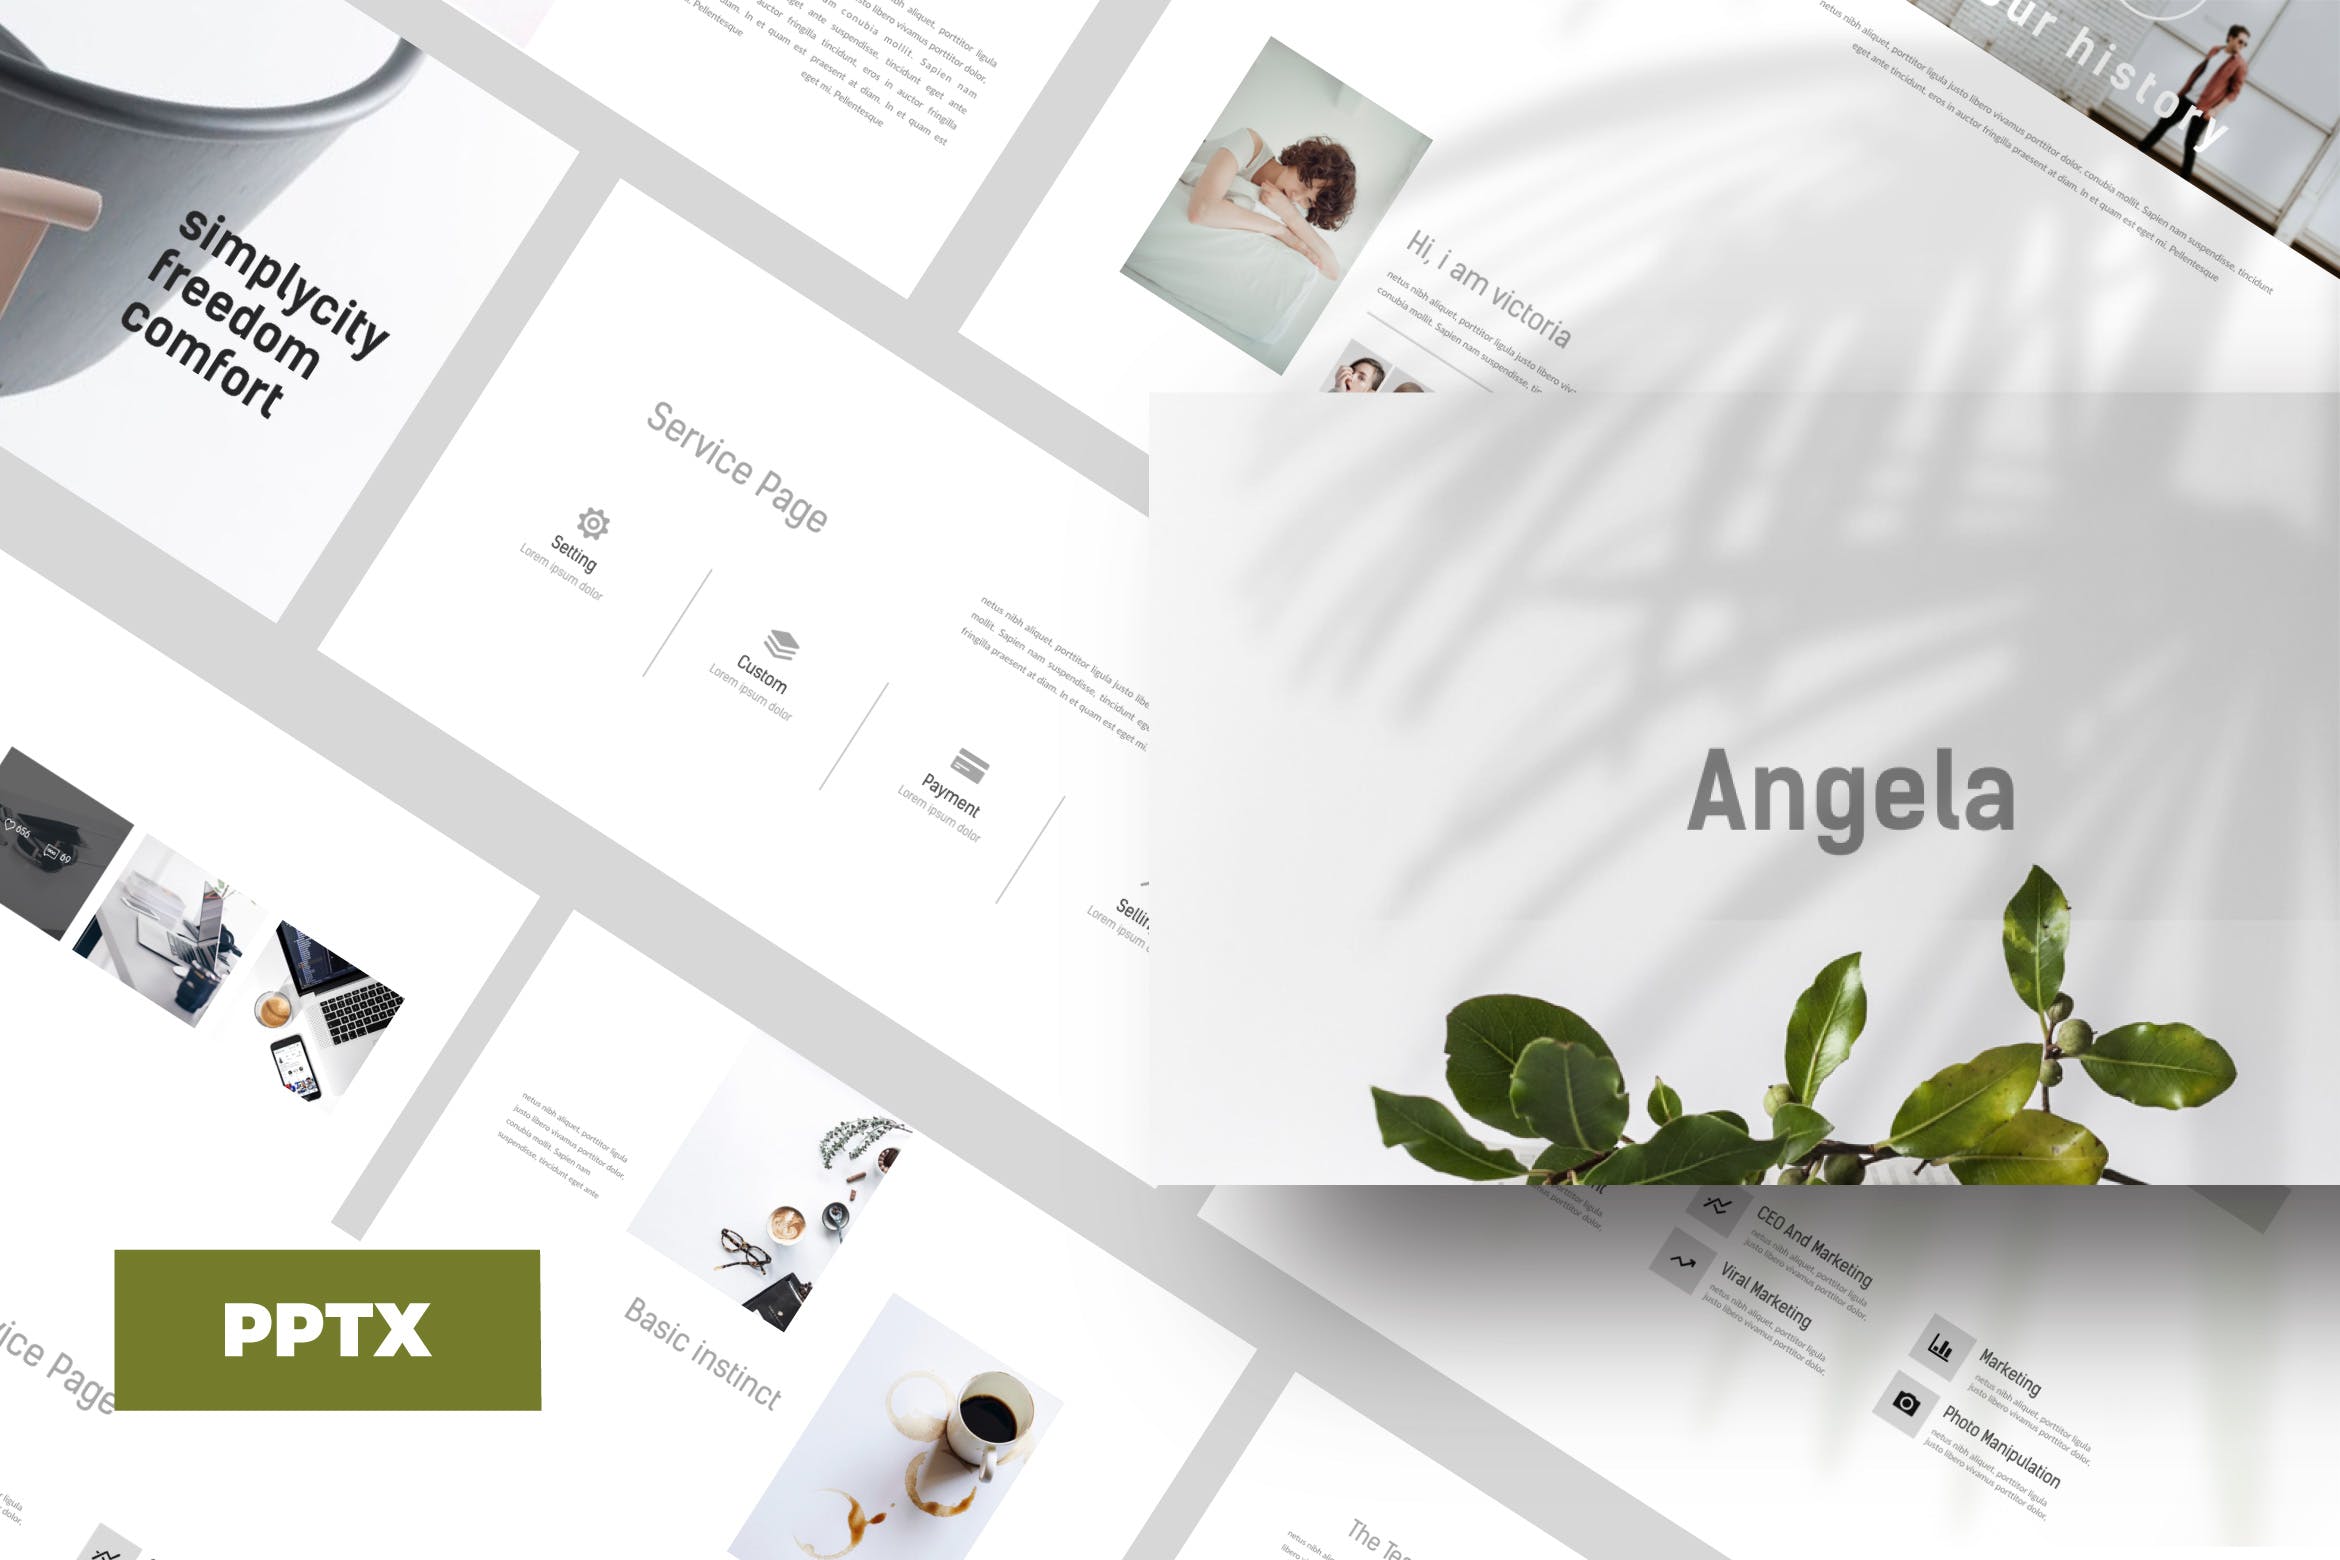 奢侈品产品介绍PPT幻灯片模板Angela Powerpoint template插图